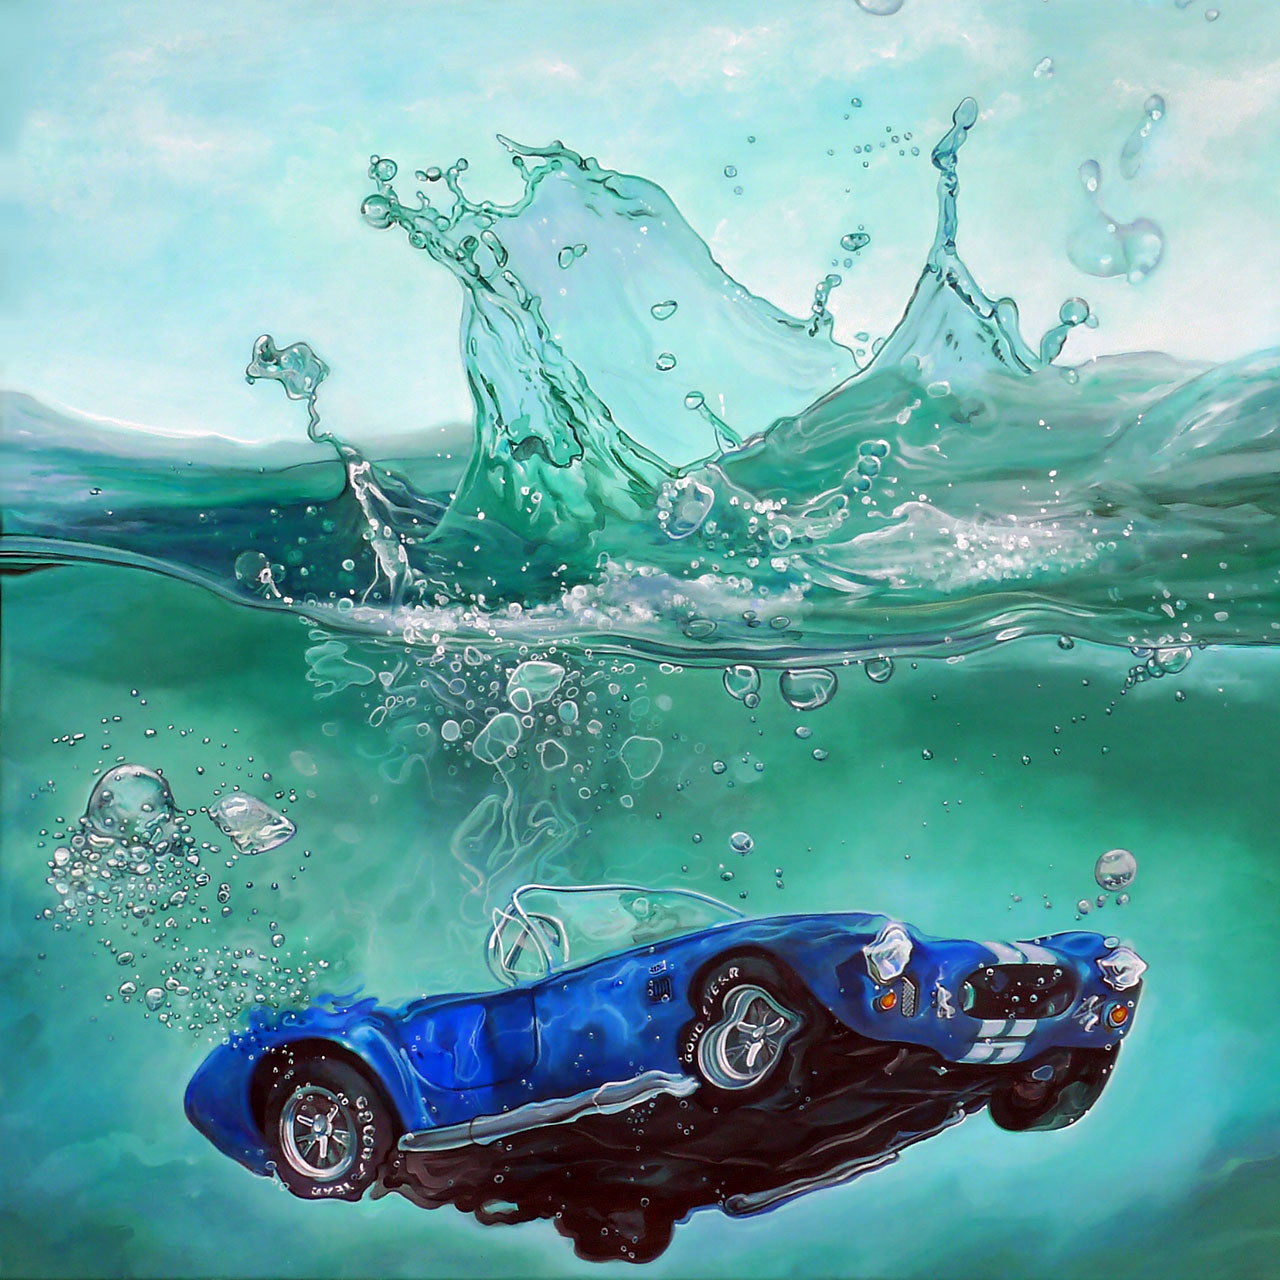 Marcello Petisci
'Splash'
Acrylic on canvas, 97x97cm, 2015. 